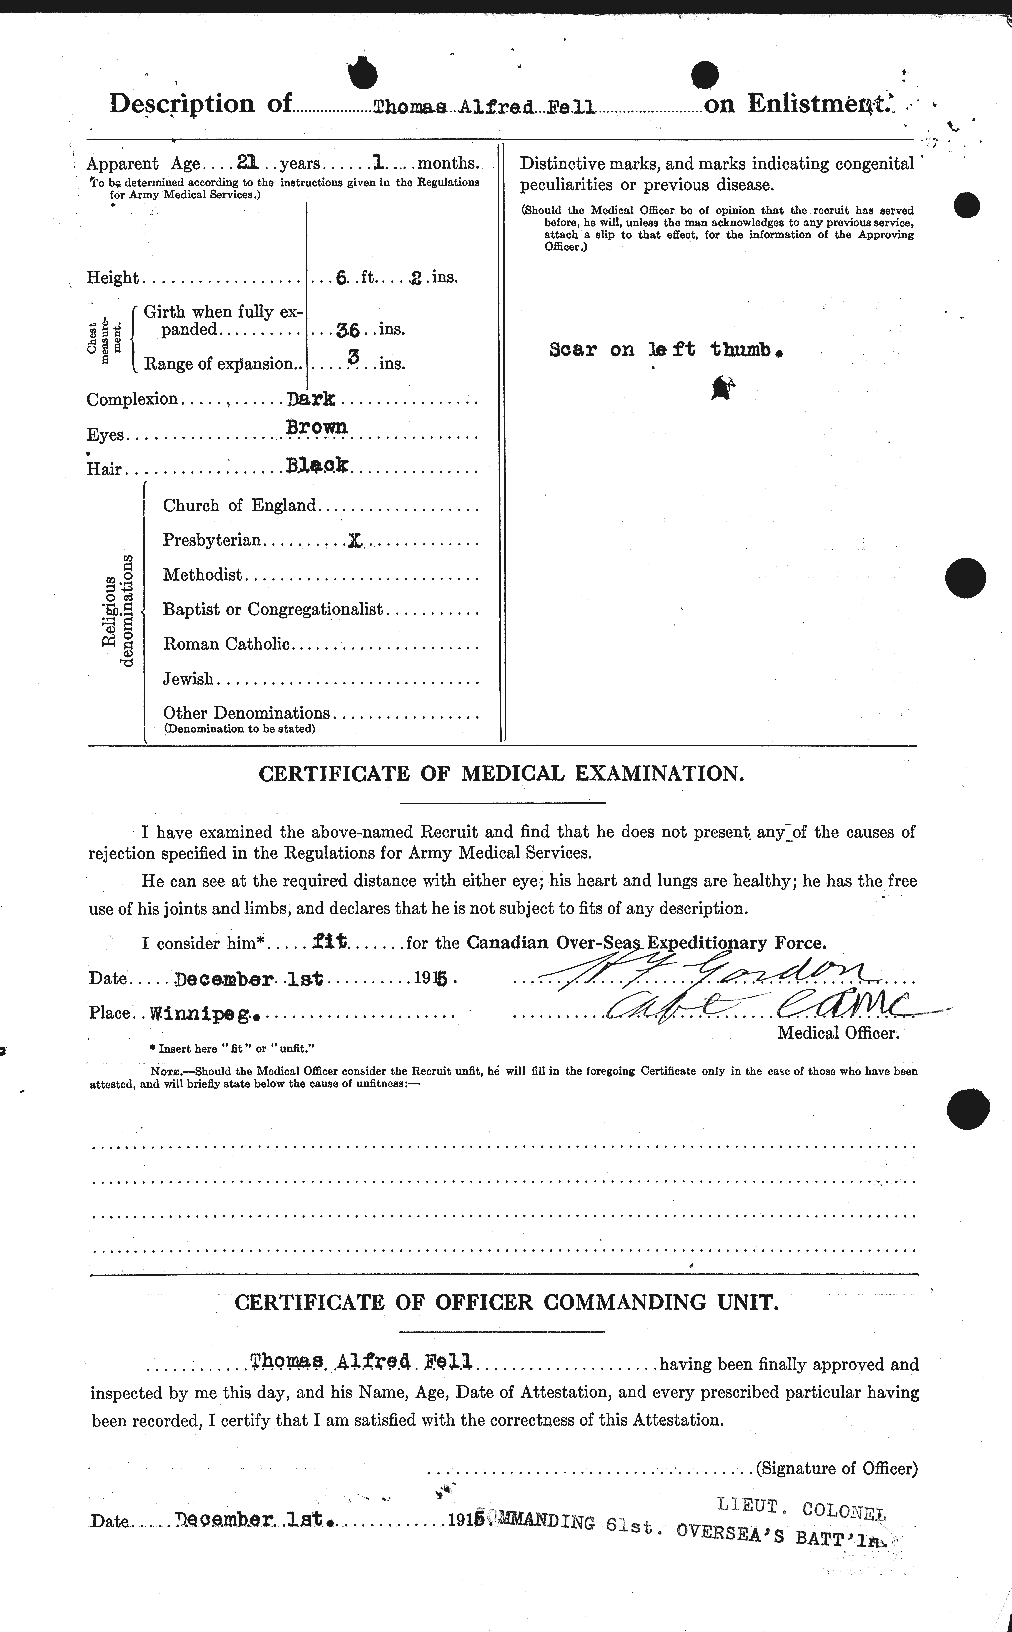 Dossiers du Personnel de la Première Guerre mondiale - CEC 321930b